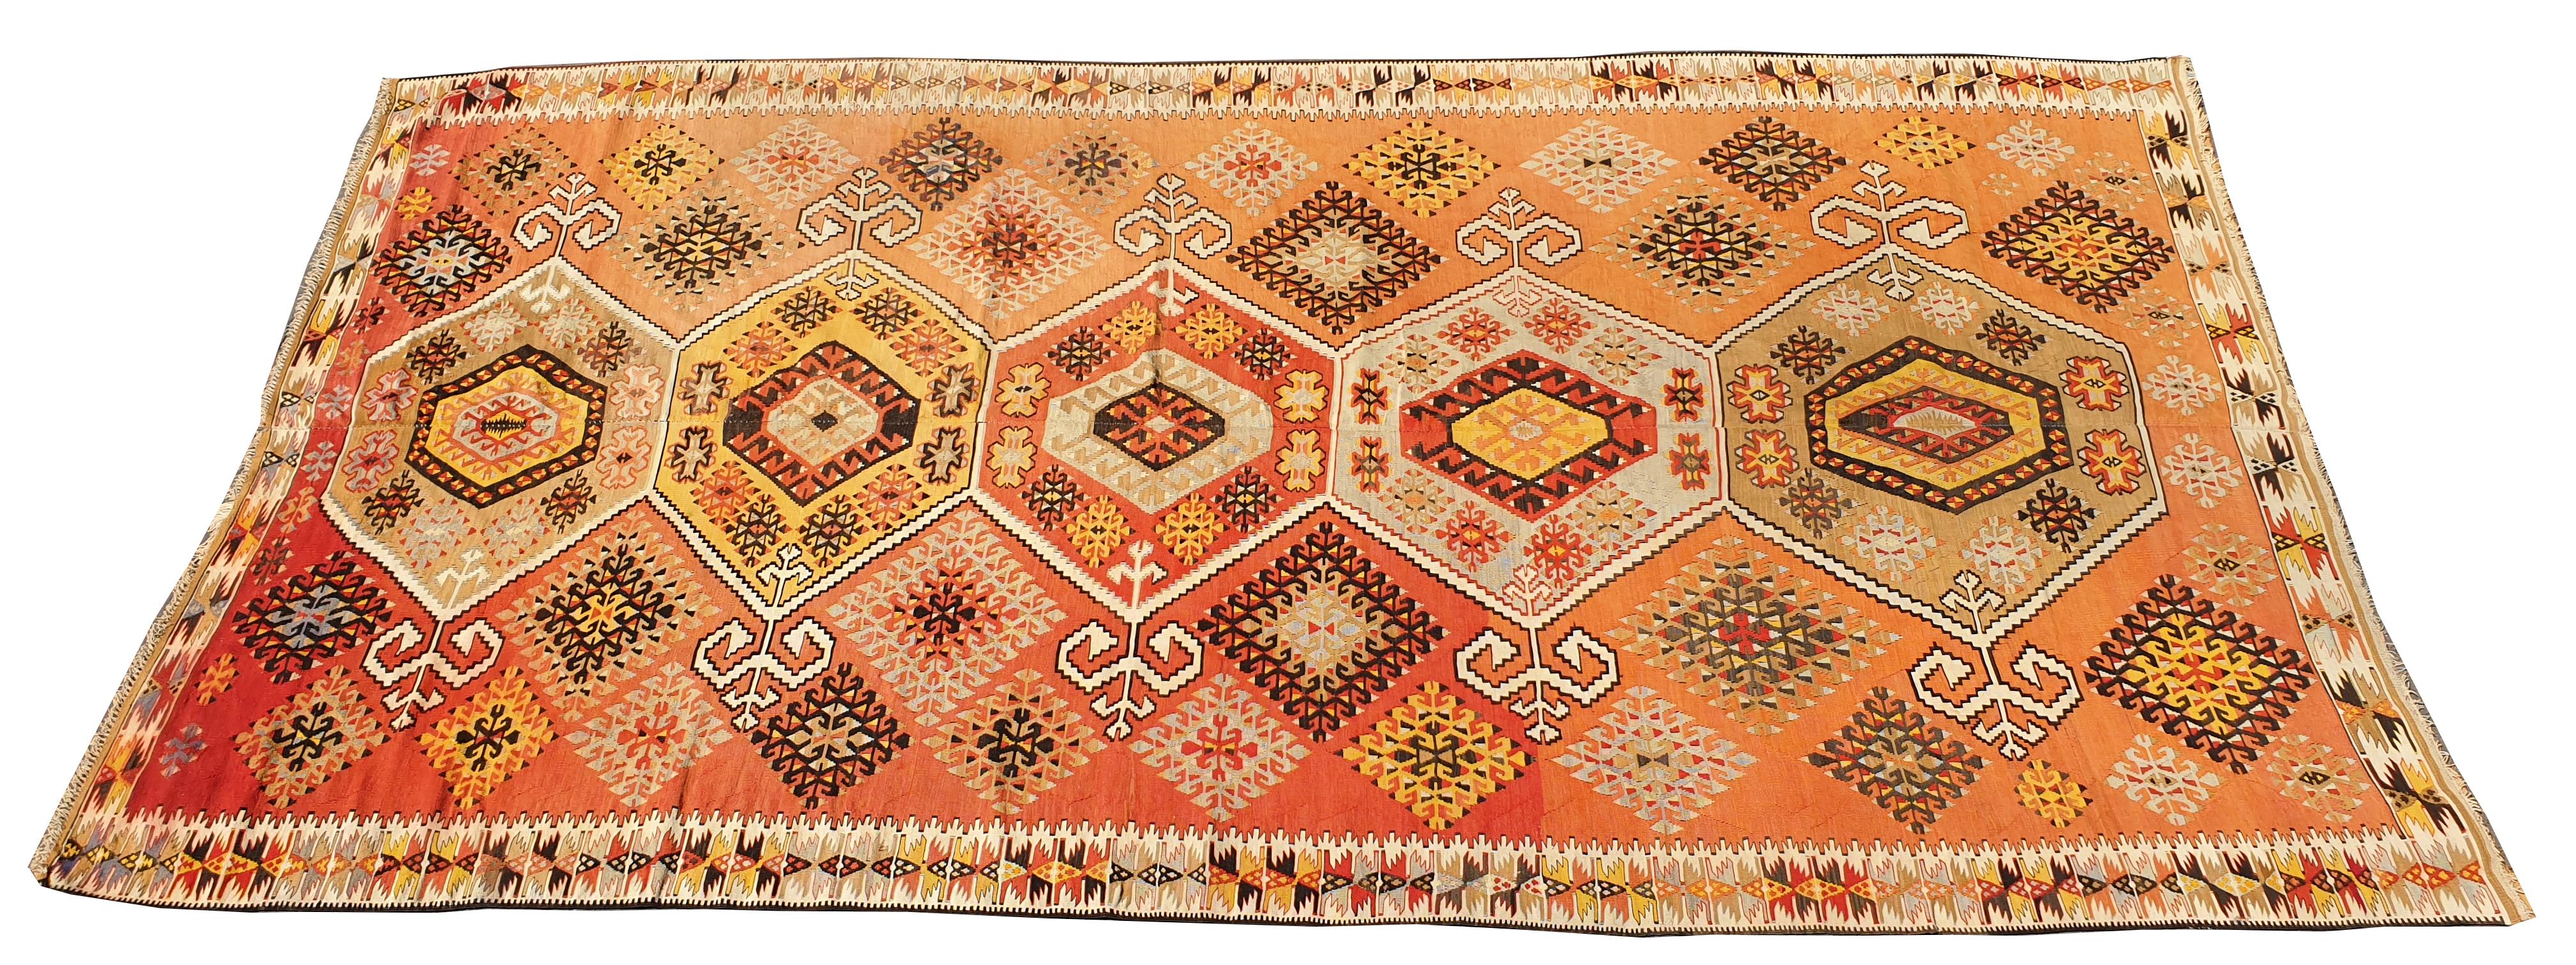 759 - schöne Mitte des Jahrhunderts türkischen flachen Teppich oder Kilim, mit geometrischen Design und hübschen Farben mit rot, rosa, orange, gelb, blau und grau, komplett handgewebt mit Wolle auf Wolle.